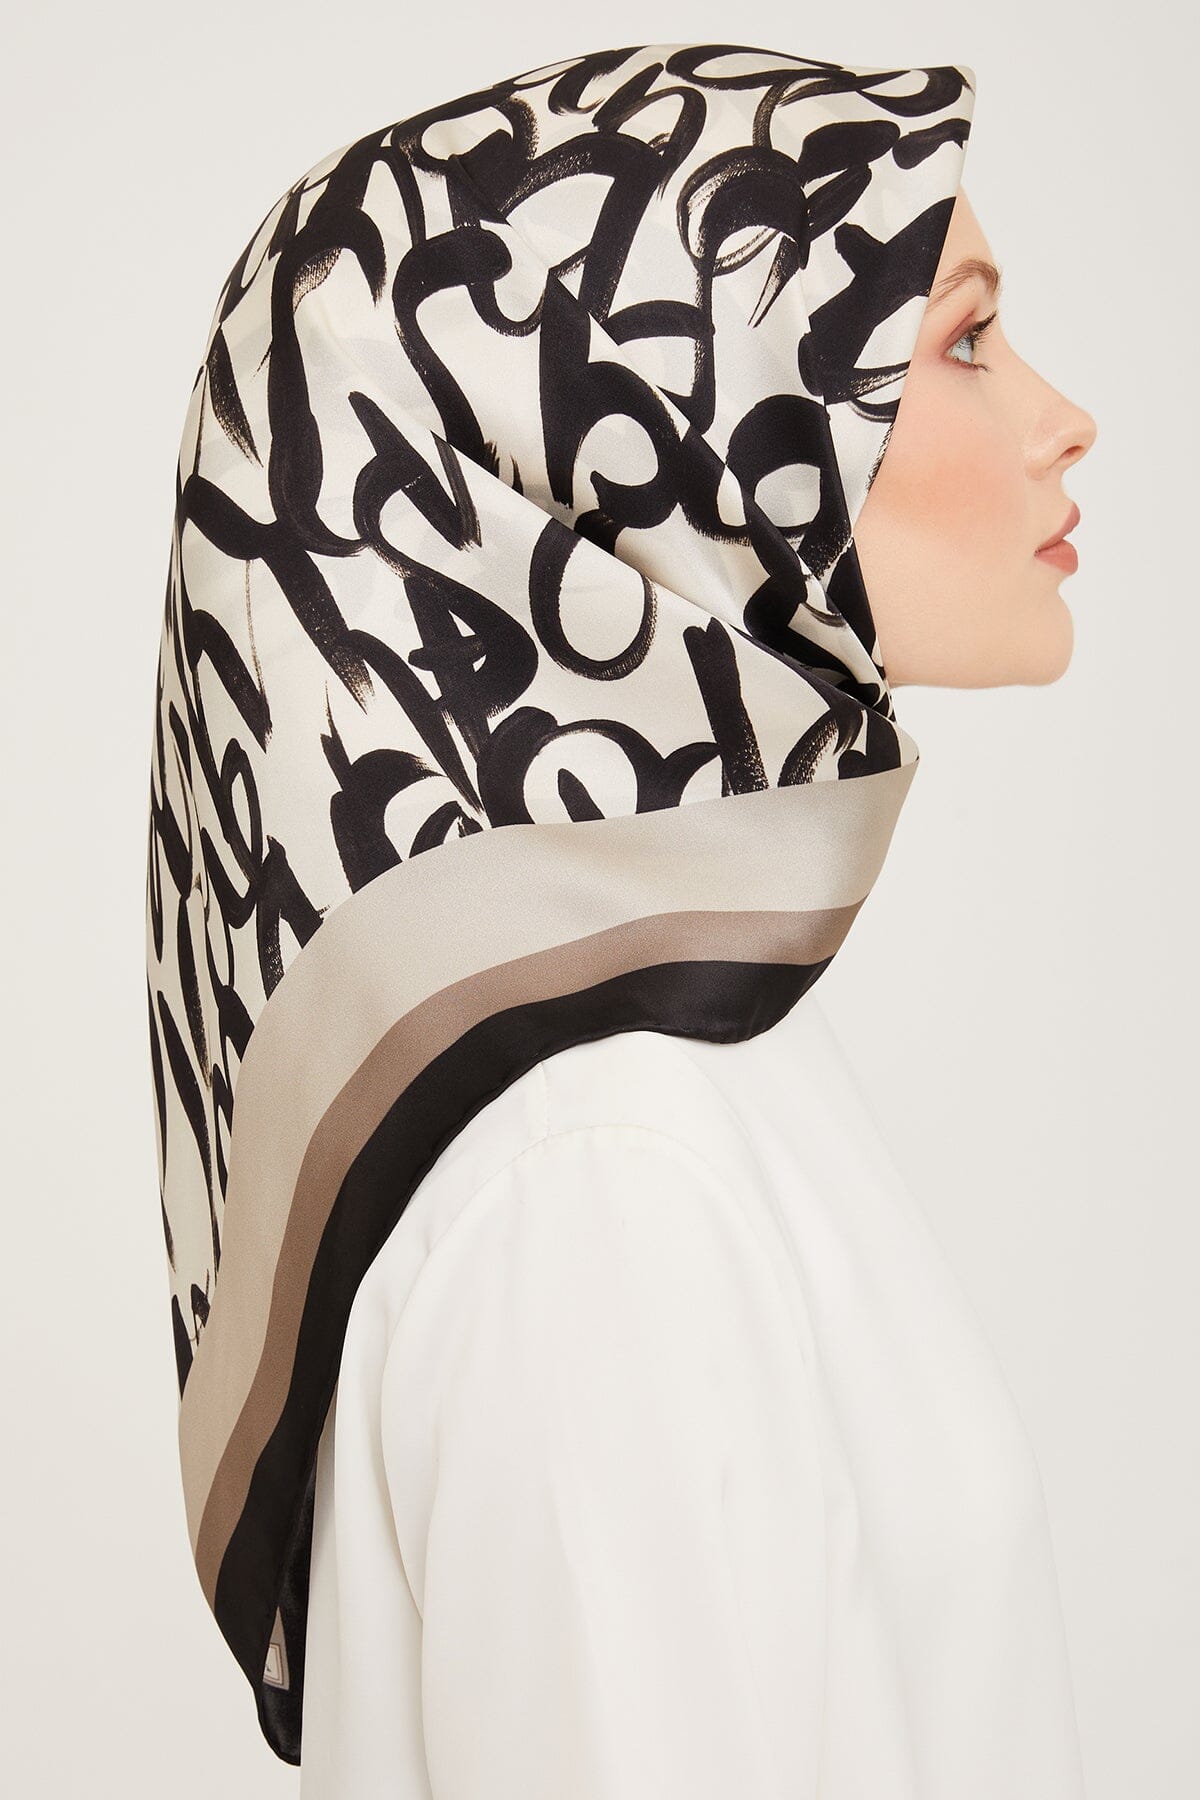 Armine Nudle Designer Silk Scarf #4 Silk Hijabs,Armine Armine 